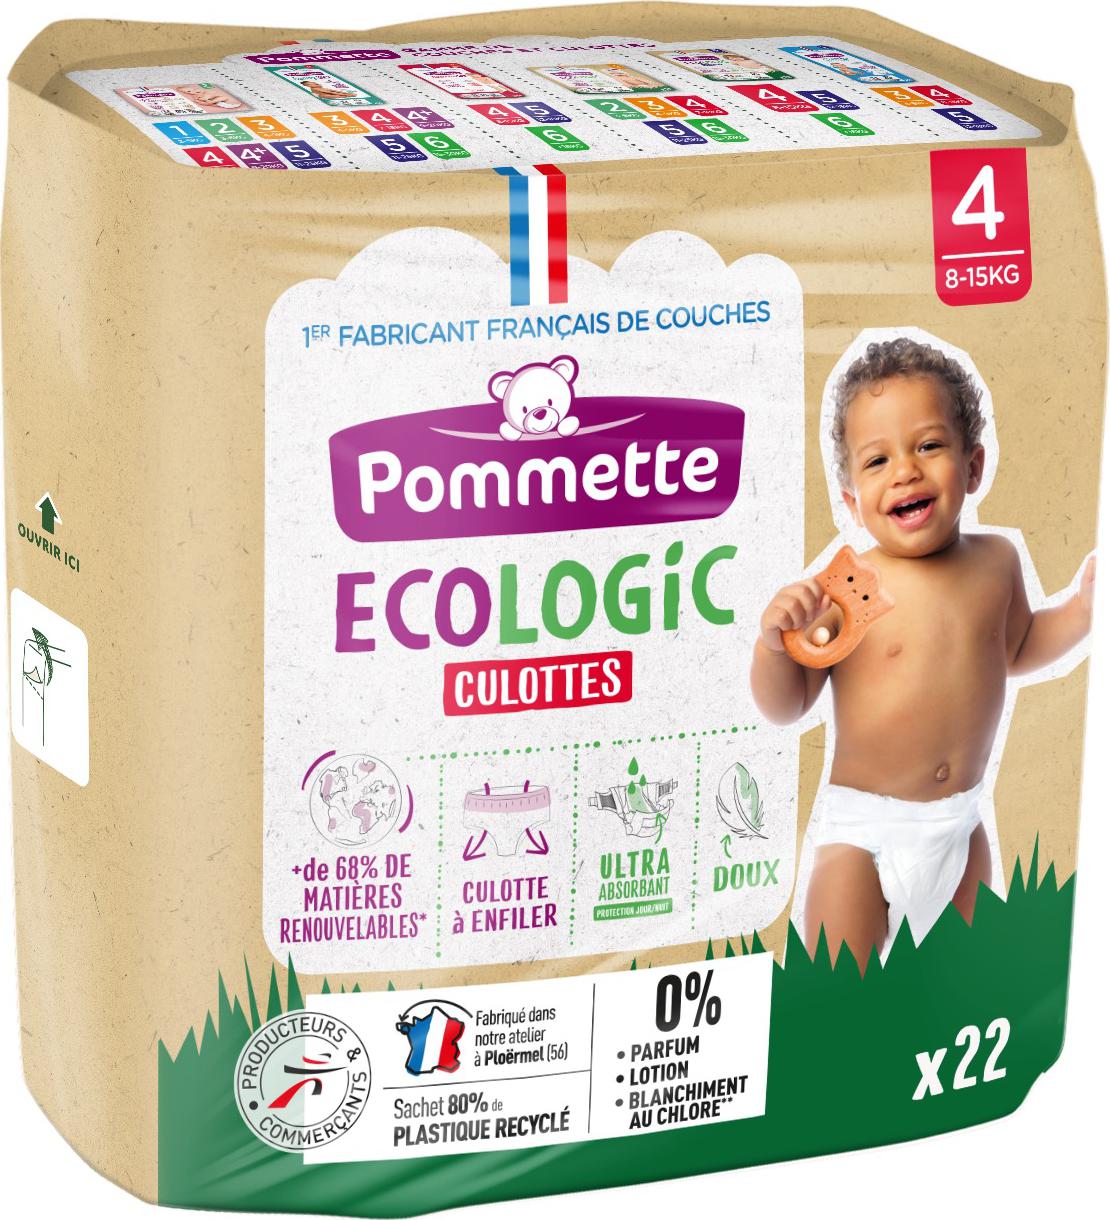 Couches Ecologic Pommette - Couches bébé écologiques